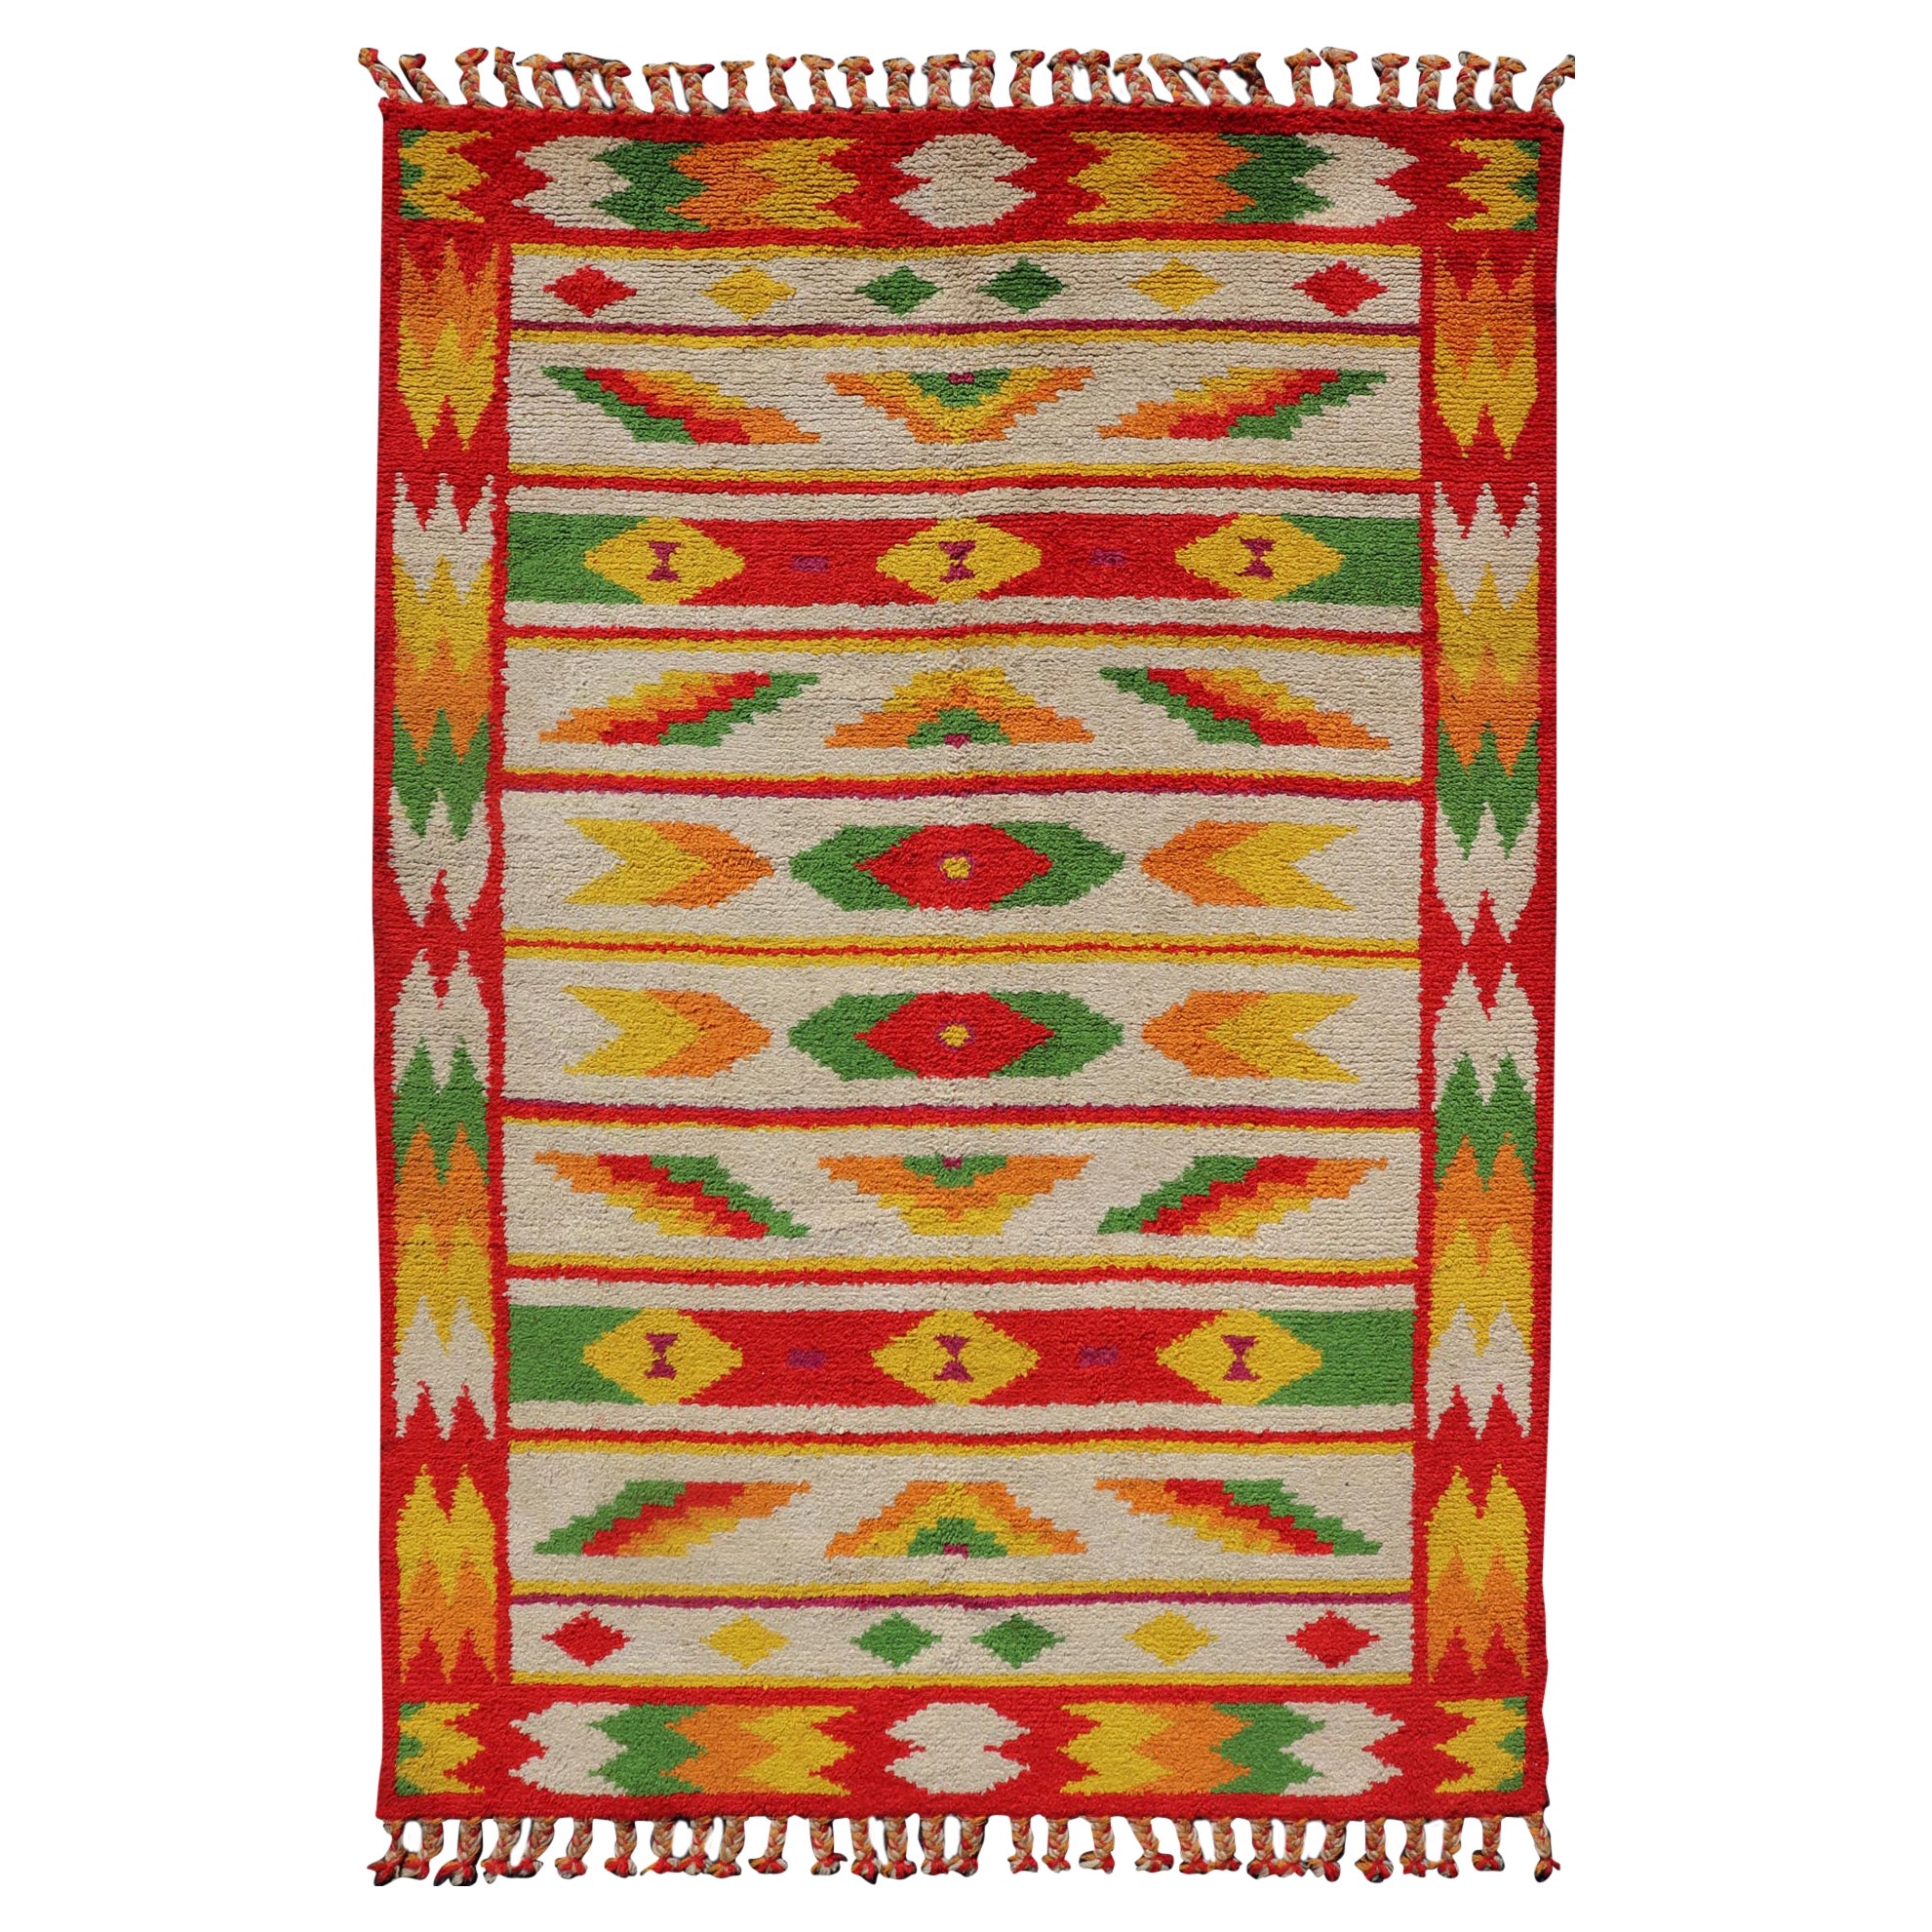 Marokkanischer Vintage-Teppich mit All-Over-Stammesmotiv-Muster in Rot, Grün und Gelb